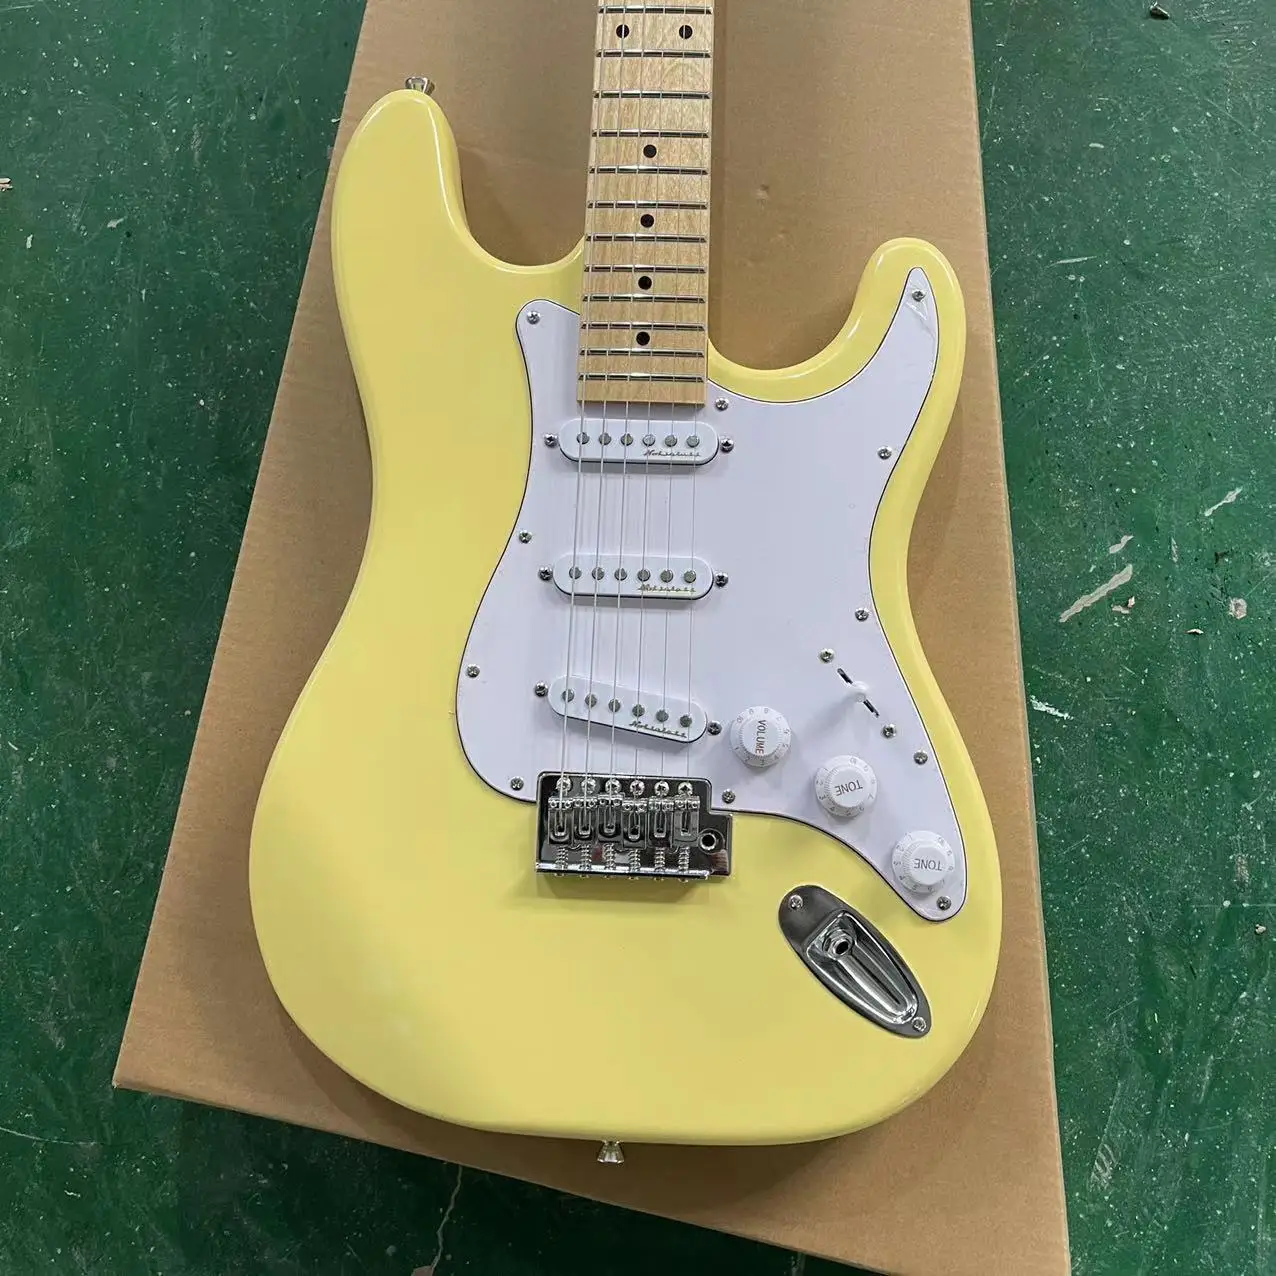 ST divisão de guitarra elétrica, corpo amarelo, único único cartucho, branco guarda conselho, único roqueiro acorde conselho, maple escala Imagem 1